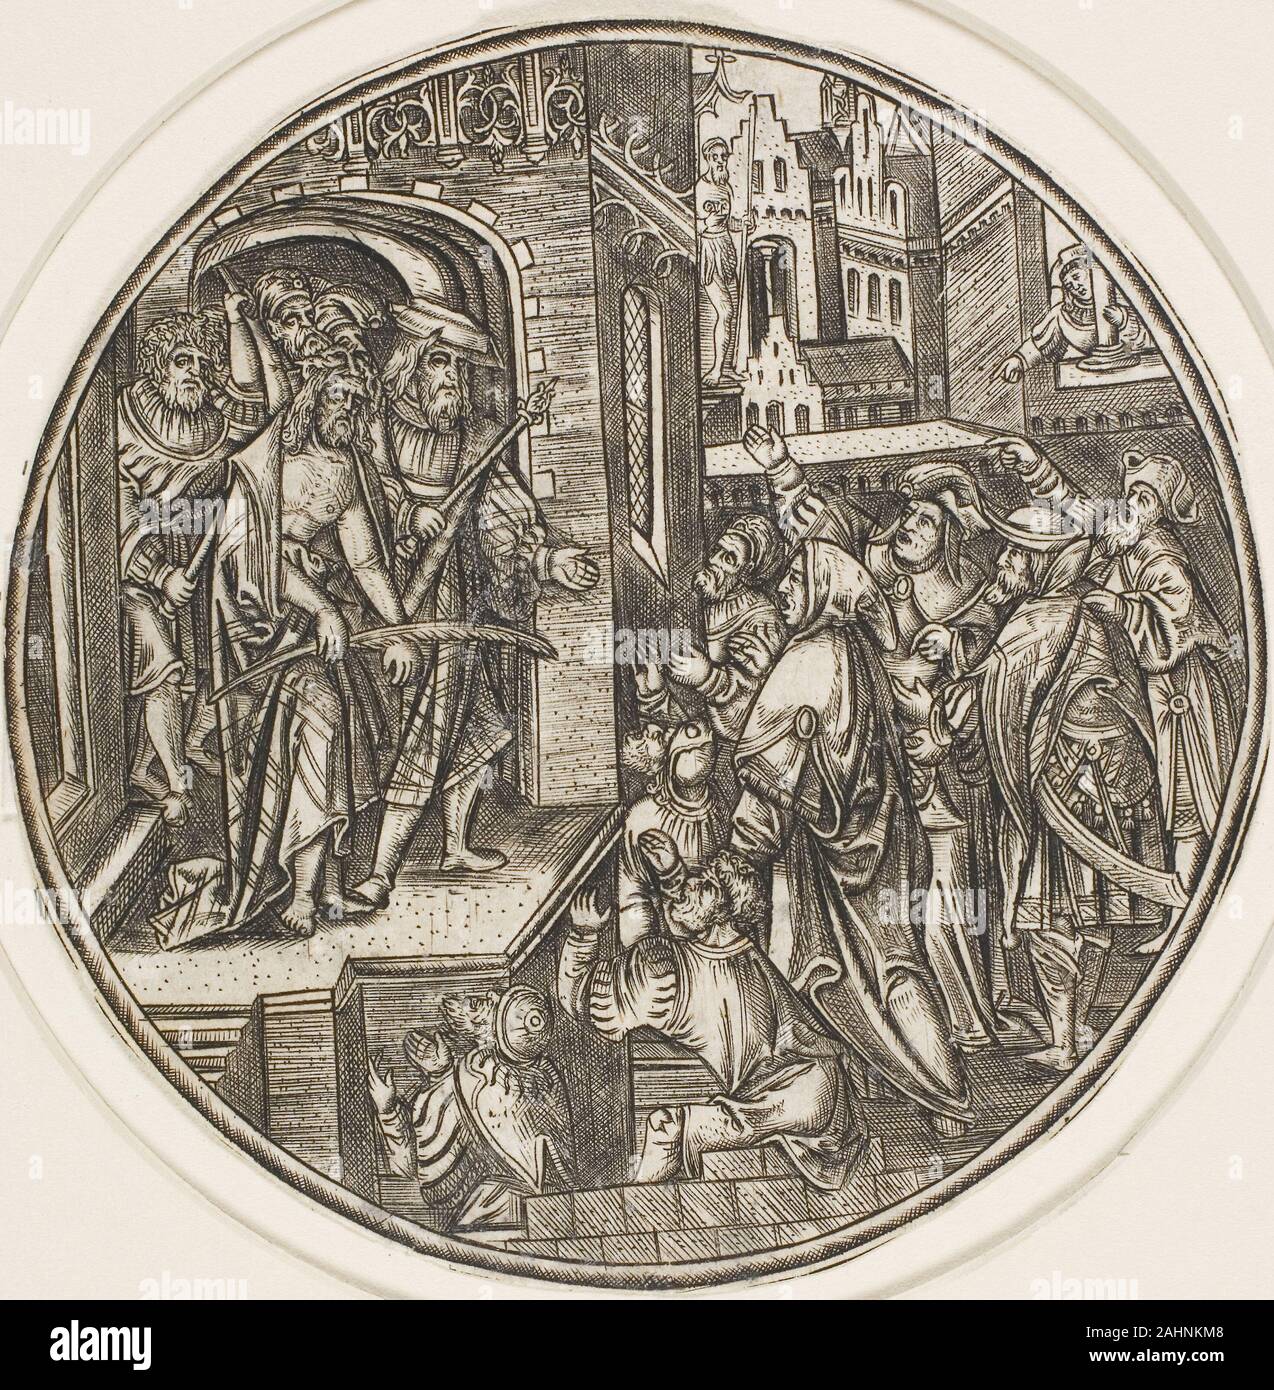 Master S. Ecce Homo, aus der Leidenschaft. 1500 - 1525. Niederlande. Gravur in Schwarz auf Elfenbein Bütten Dieser Unsignierten Bild zeigt eine Szene aus dem Leiden Christi wurde stilistisch an den Master S., eine bisher unbekannte Grafiker, die ein aktives Workshop led zugeschrieben. Es ist möglich, dass der Künstler die Antwerpen Goldschmied Alexander war (oder "Sander") van Brugsal; er hatte eine internationale Geschmack in der Kunst, für die er vier Drucke von Albrecht Dürer, ein Gast, der im August 1520 erhalten. Die meisten der Werke des Künstlers produziert wurden, hingebungsvollen, Rundschreiben, und klein genug, um als Entwürfe für Rüstung, t Stockfoto